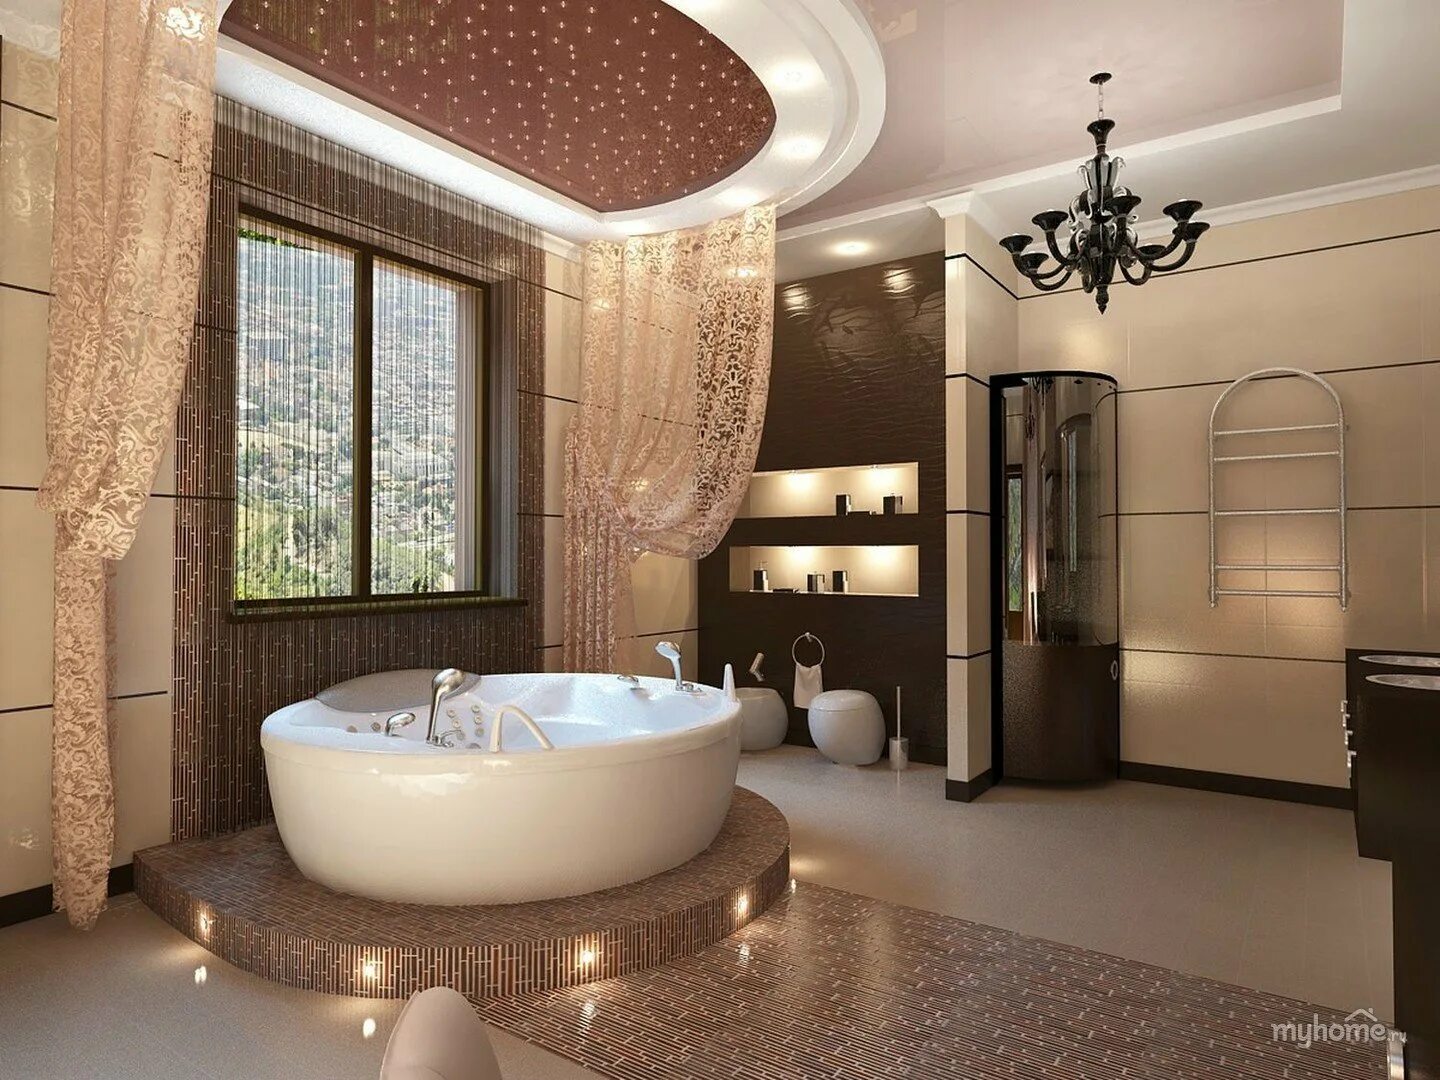 Ванная комната. Роскошные Ванные комнаты. Красивая ванная комната. Интерьер ванной. Большая ванная комната в частном доме.